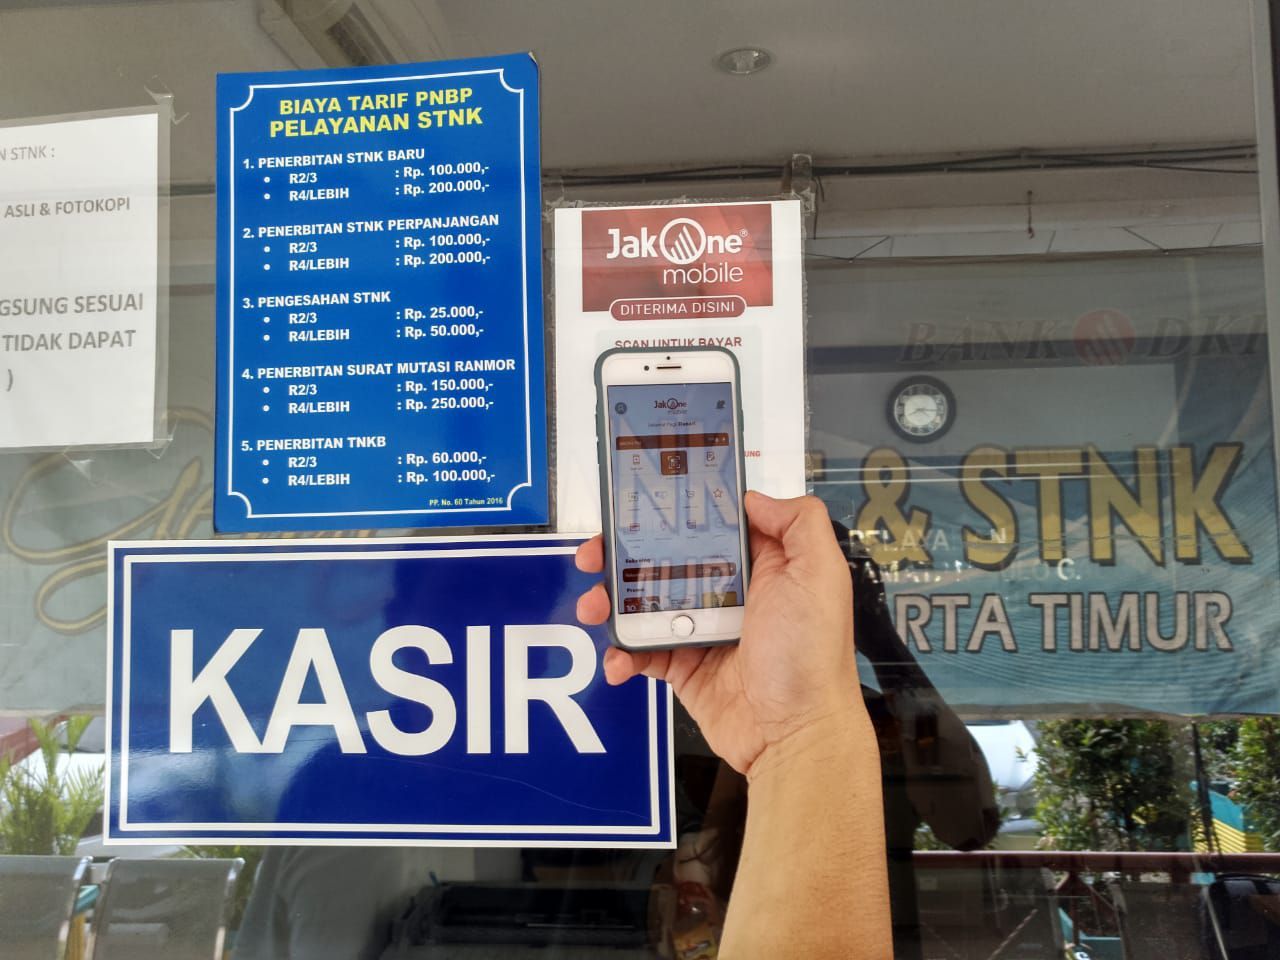 Salah satu Wajib Pajak sedang melakukan transaksi pembayaran Pajak Kendaraan Bermotor (PKB) menggunakan JakOne Mobile di Jakarta, (21/11). Untuk memaksimalkan kemudahan bagi Wajib Pajak, Bank DKI menyediakan aplikasi layanan keuangan JakOne Mobile sebagai solusi praktis untuk pembayaran PKB kapanpun dan dimanapun. Wajib pajak hanya perlu memasukkan nomor polisi kendaraan yang akan dibayar melalui JakOne Mobile.